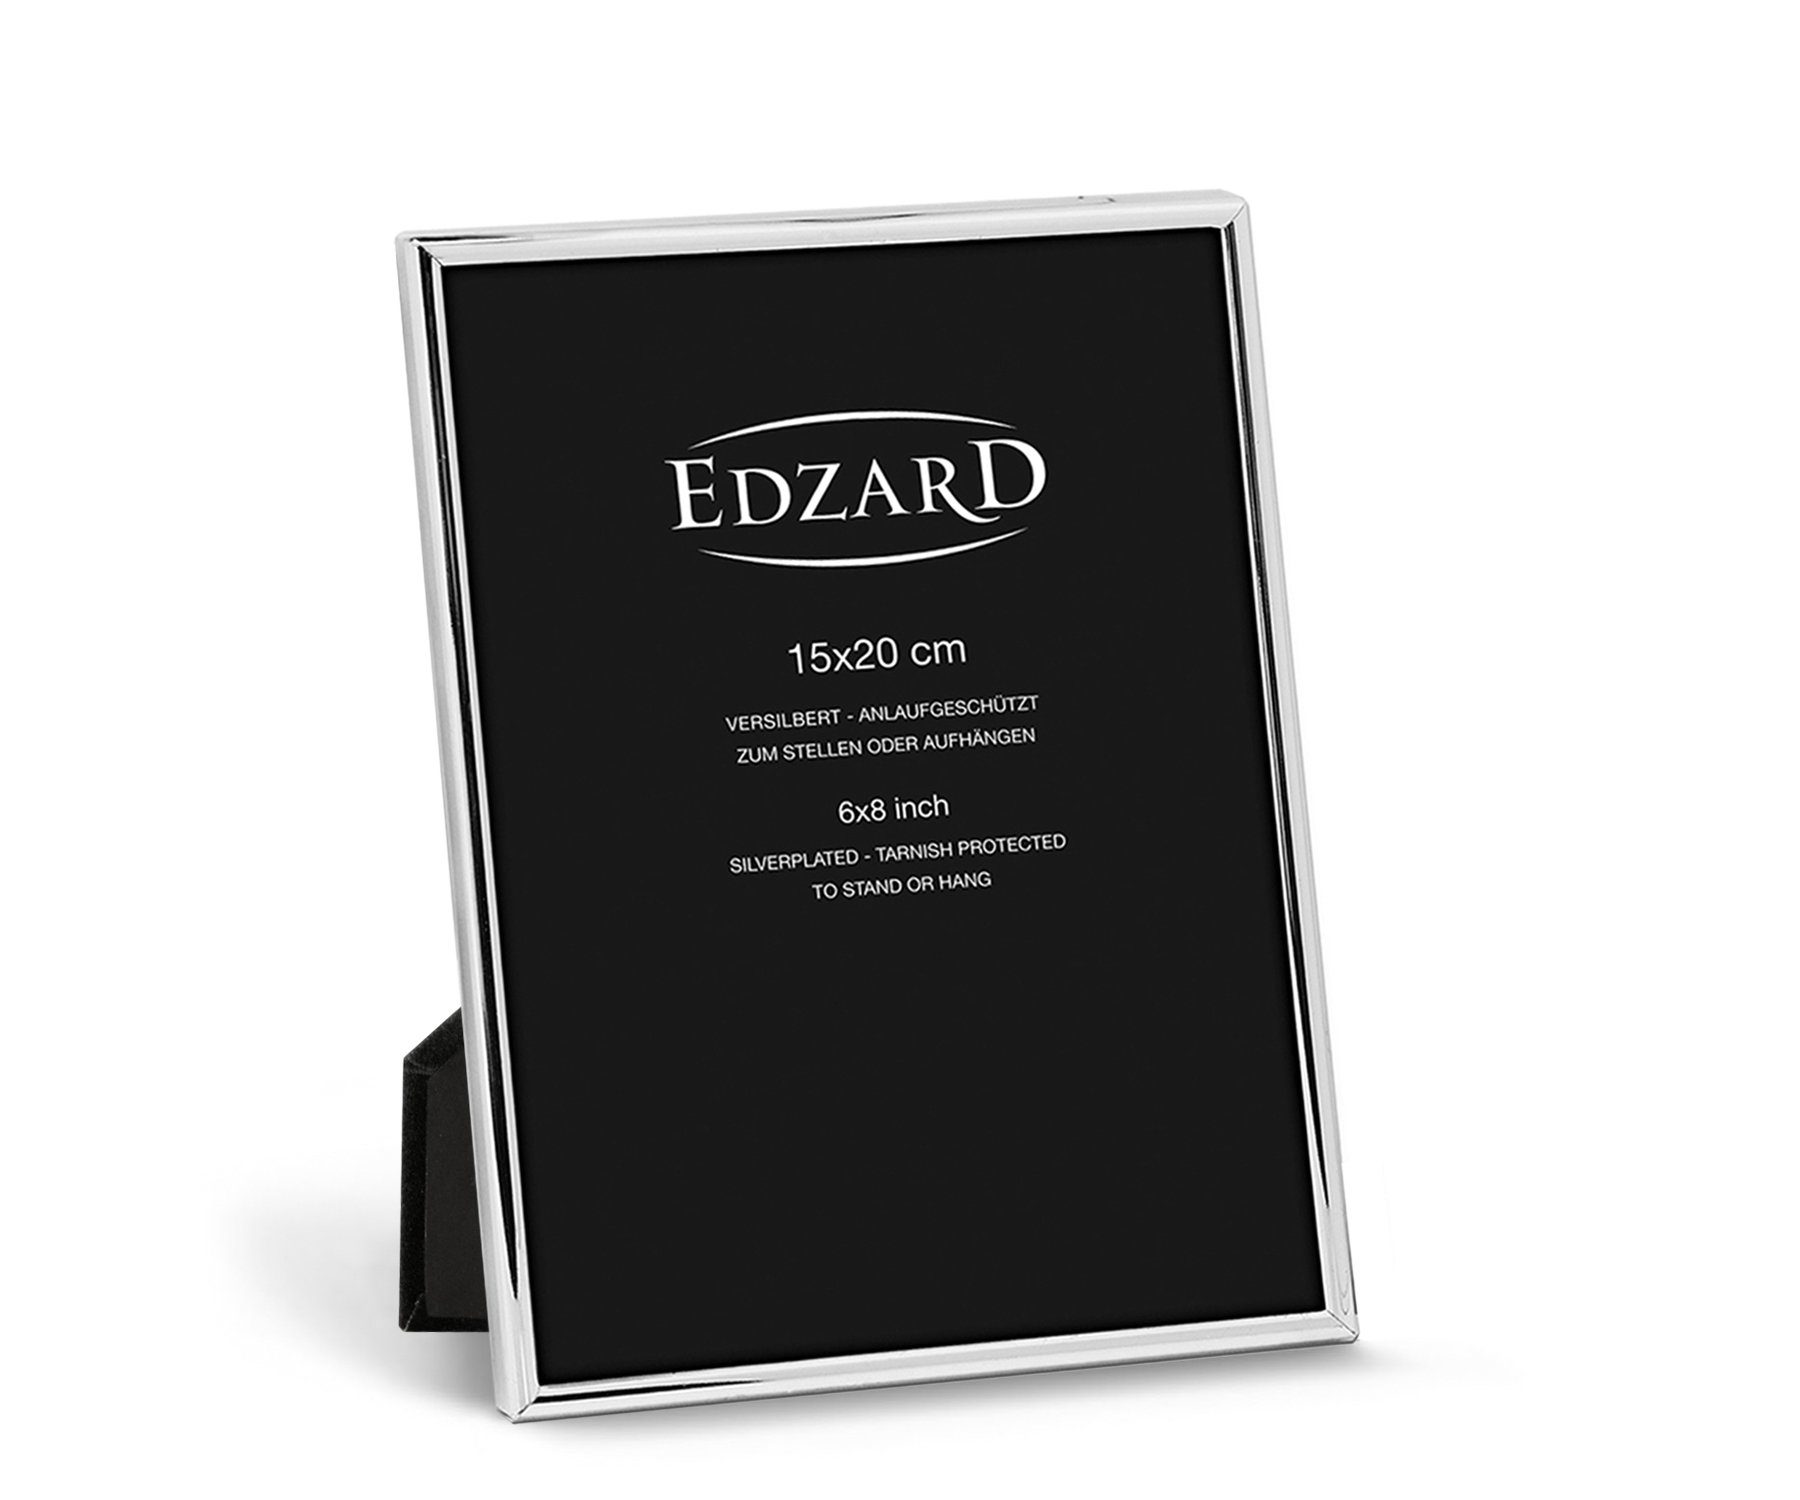 EDZARD Bilderrahmen Genua, versilbert und anlaufgeschützt, für 15x20 cm Bilder - Fotorahmen